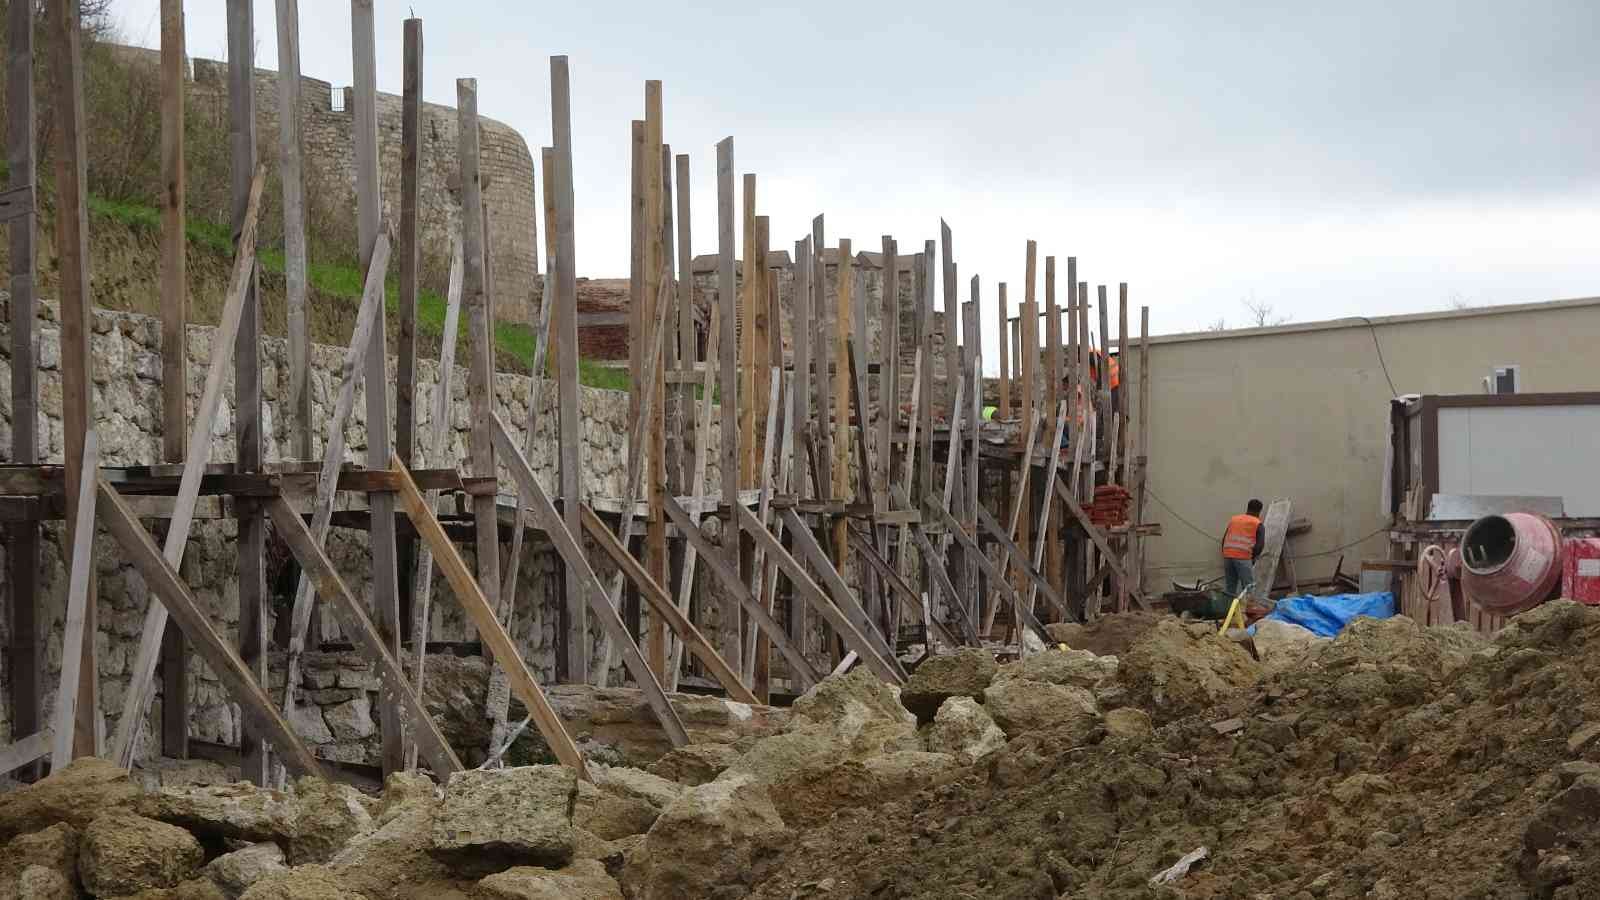 Çanakkale Savaşları sırasında 4. Ağır Topçu Alayı’nın karargah merkezi olan Namazgah Tabyalarının sur duvarlarının restorasyon çalışmaları ...